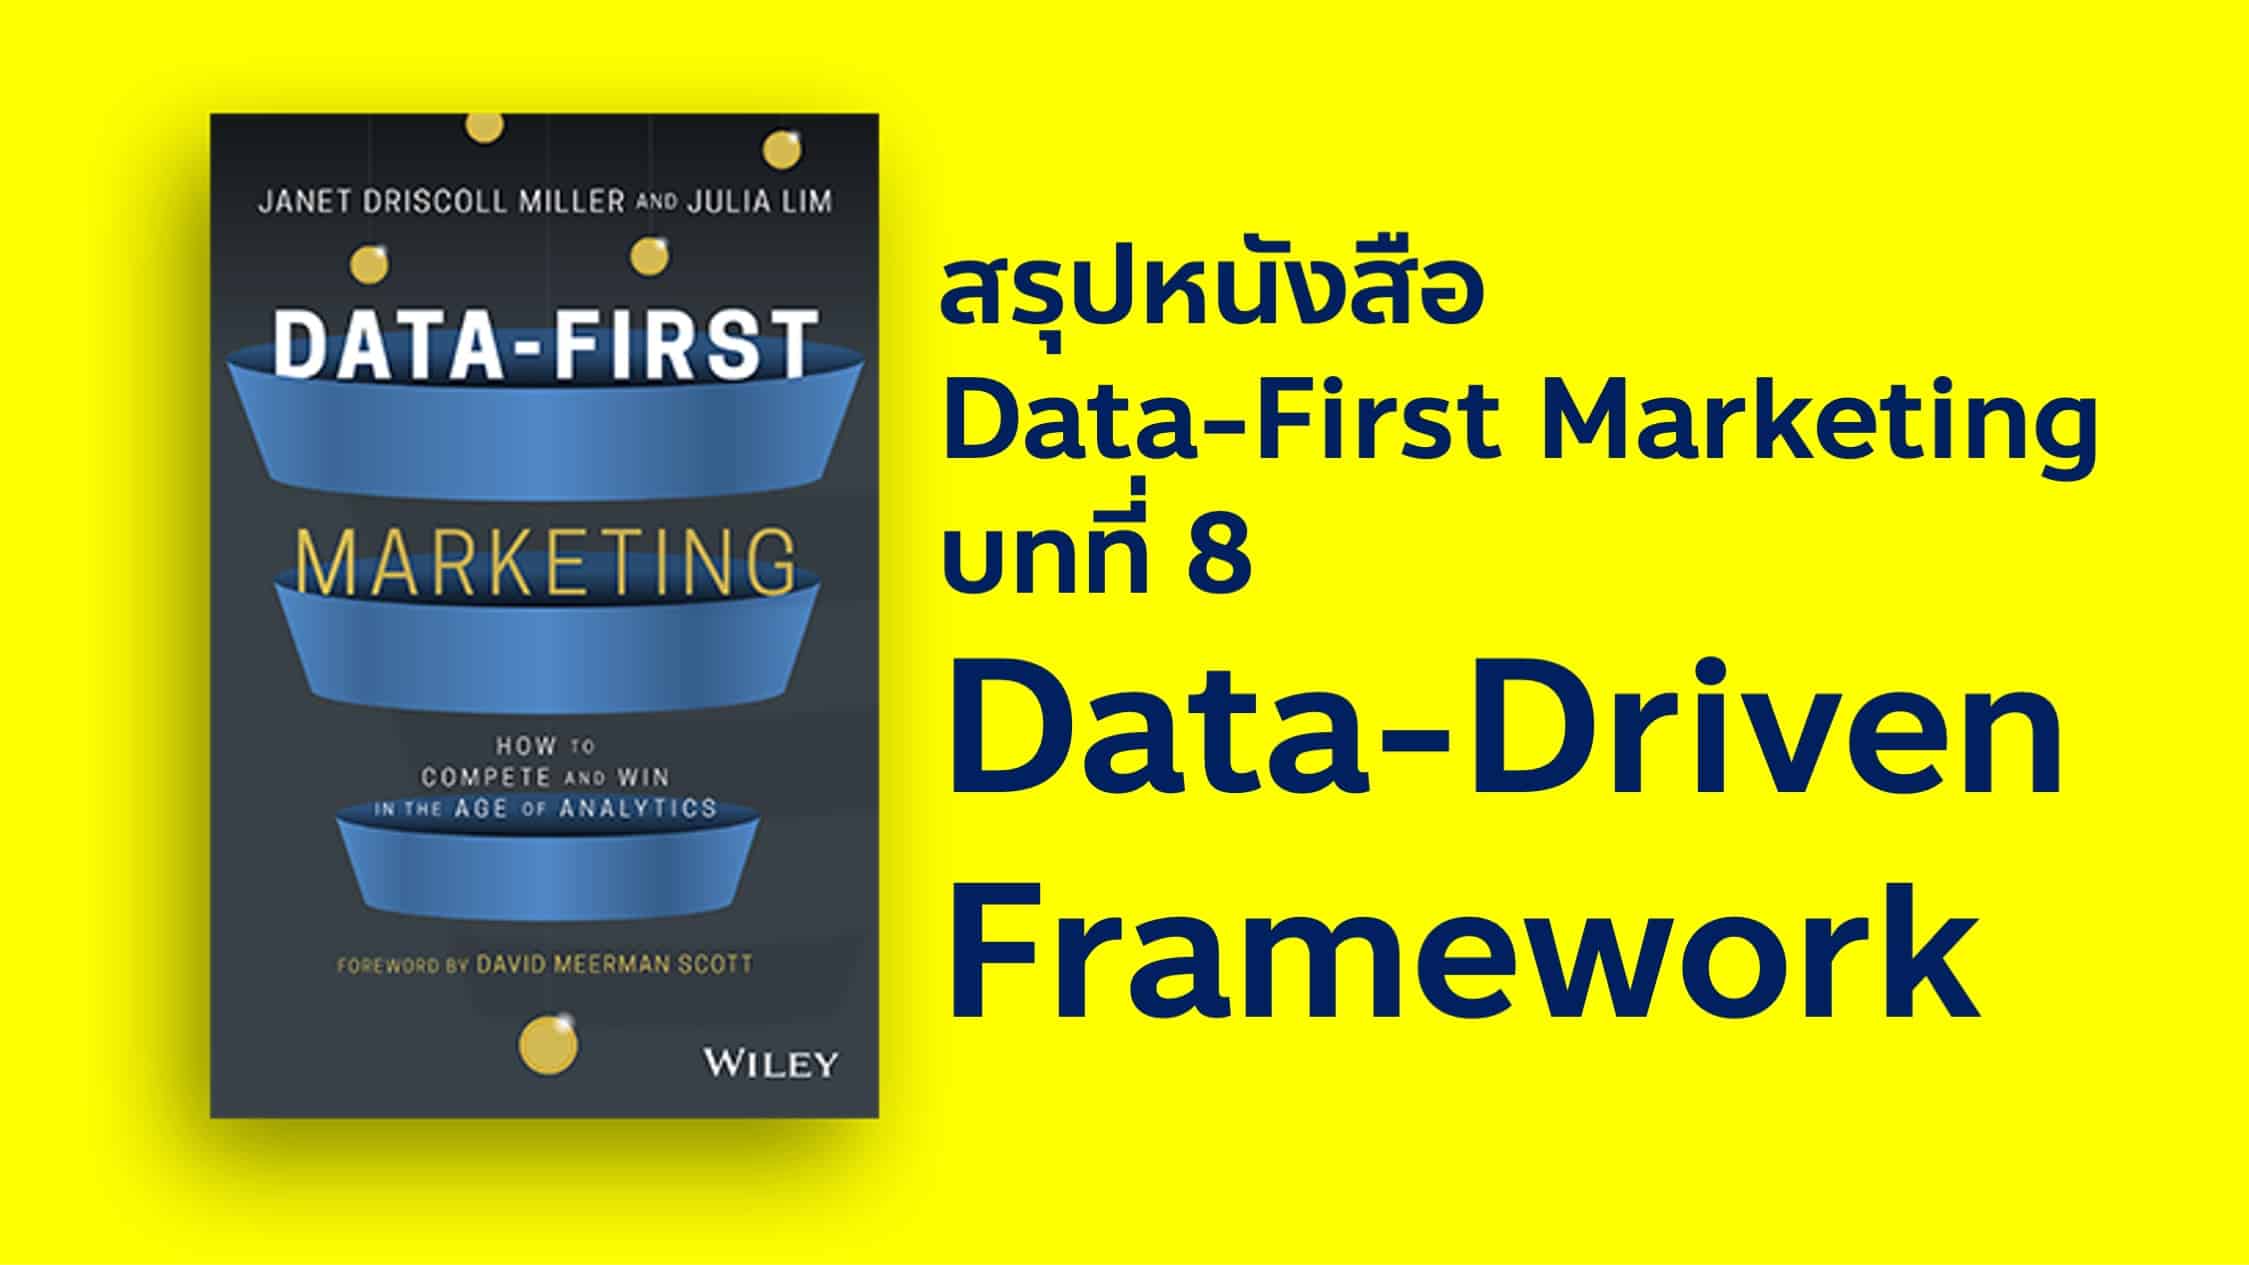 สรุปหนังสือ Data-First Marketing บทที่ 8 กับ Campaign Framework เข้าสู่เฟสที่ 4 ของการทำ Data-Driven Marketing